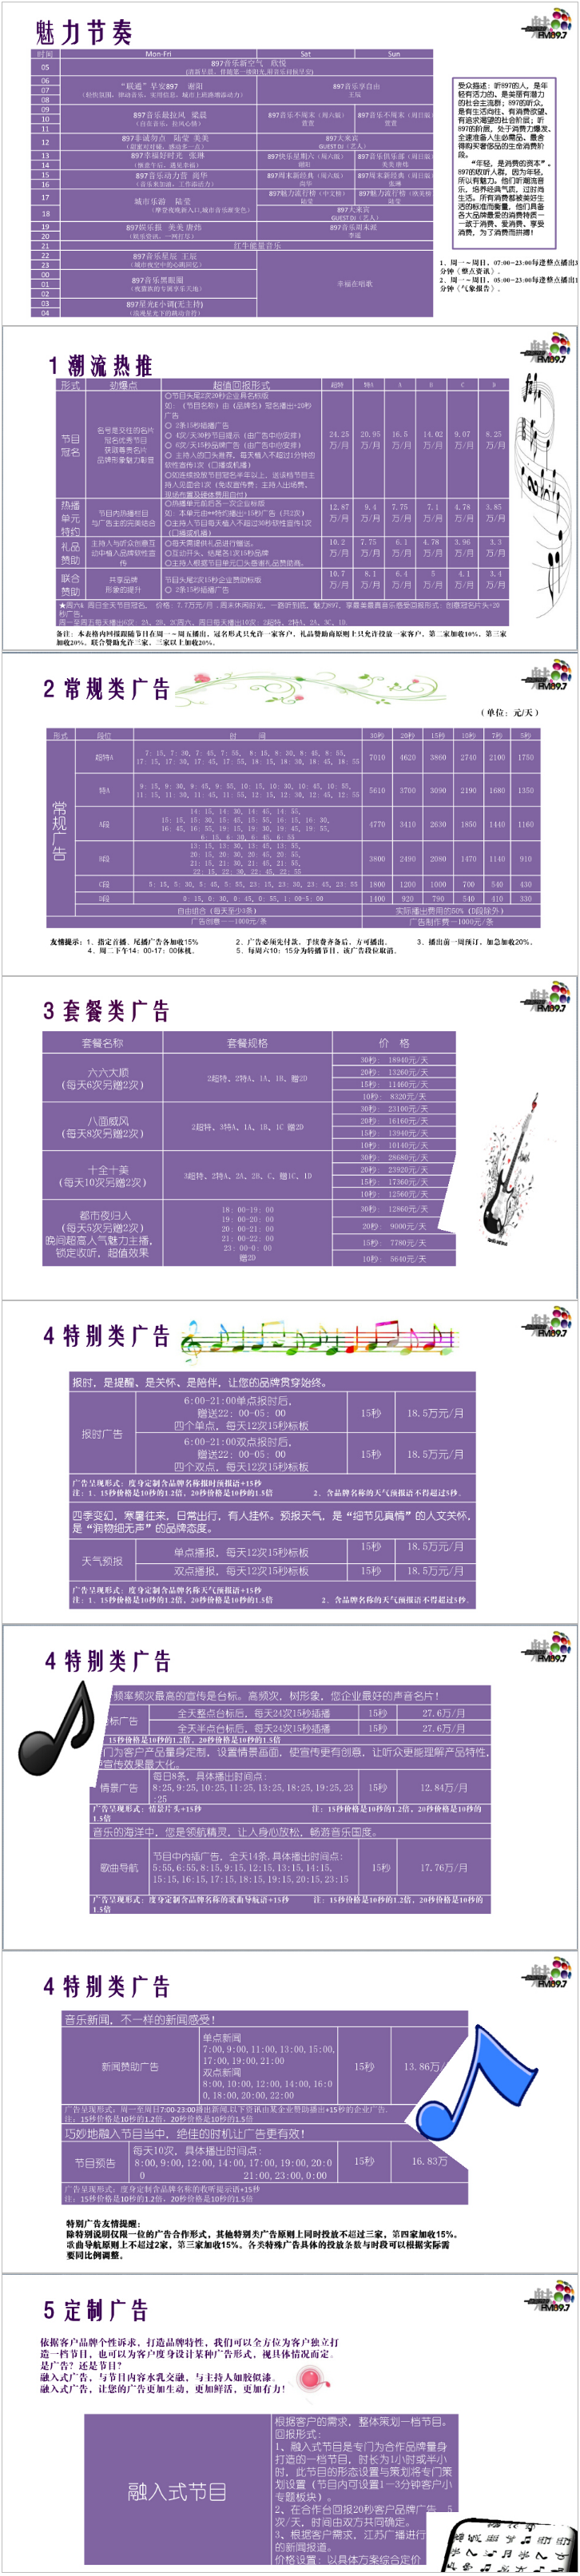 2014江苏人民广播电台音乐频率City FM89.7广告报价表.png